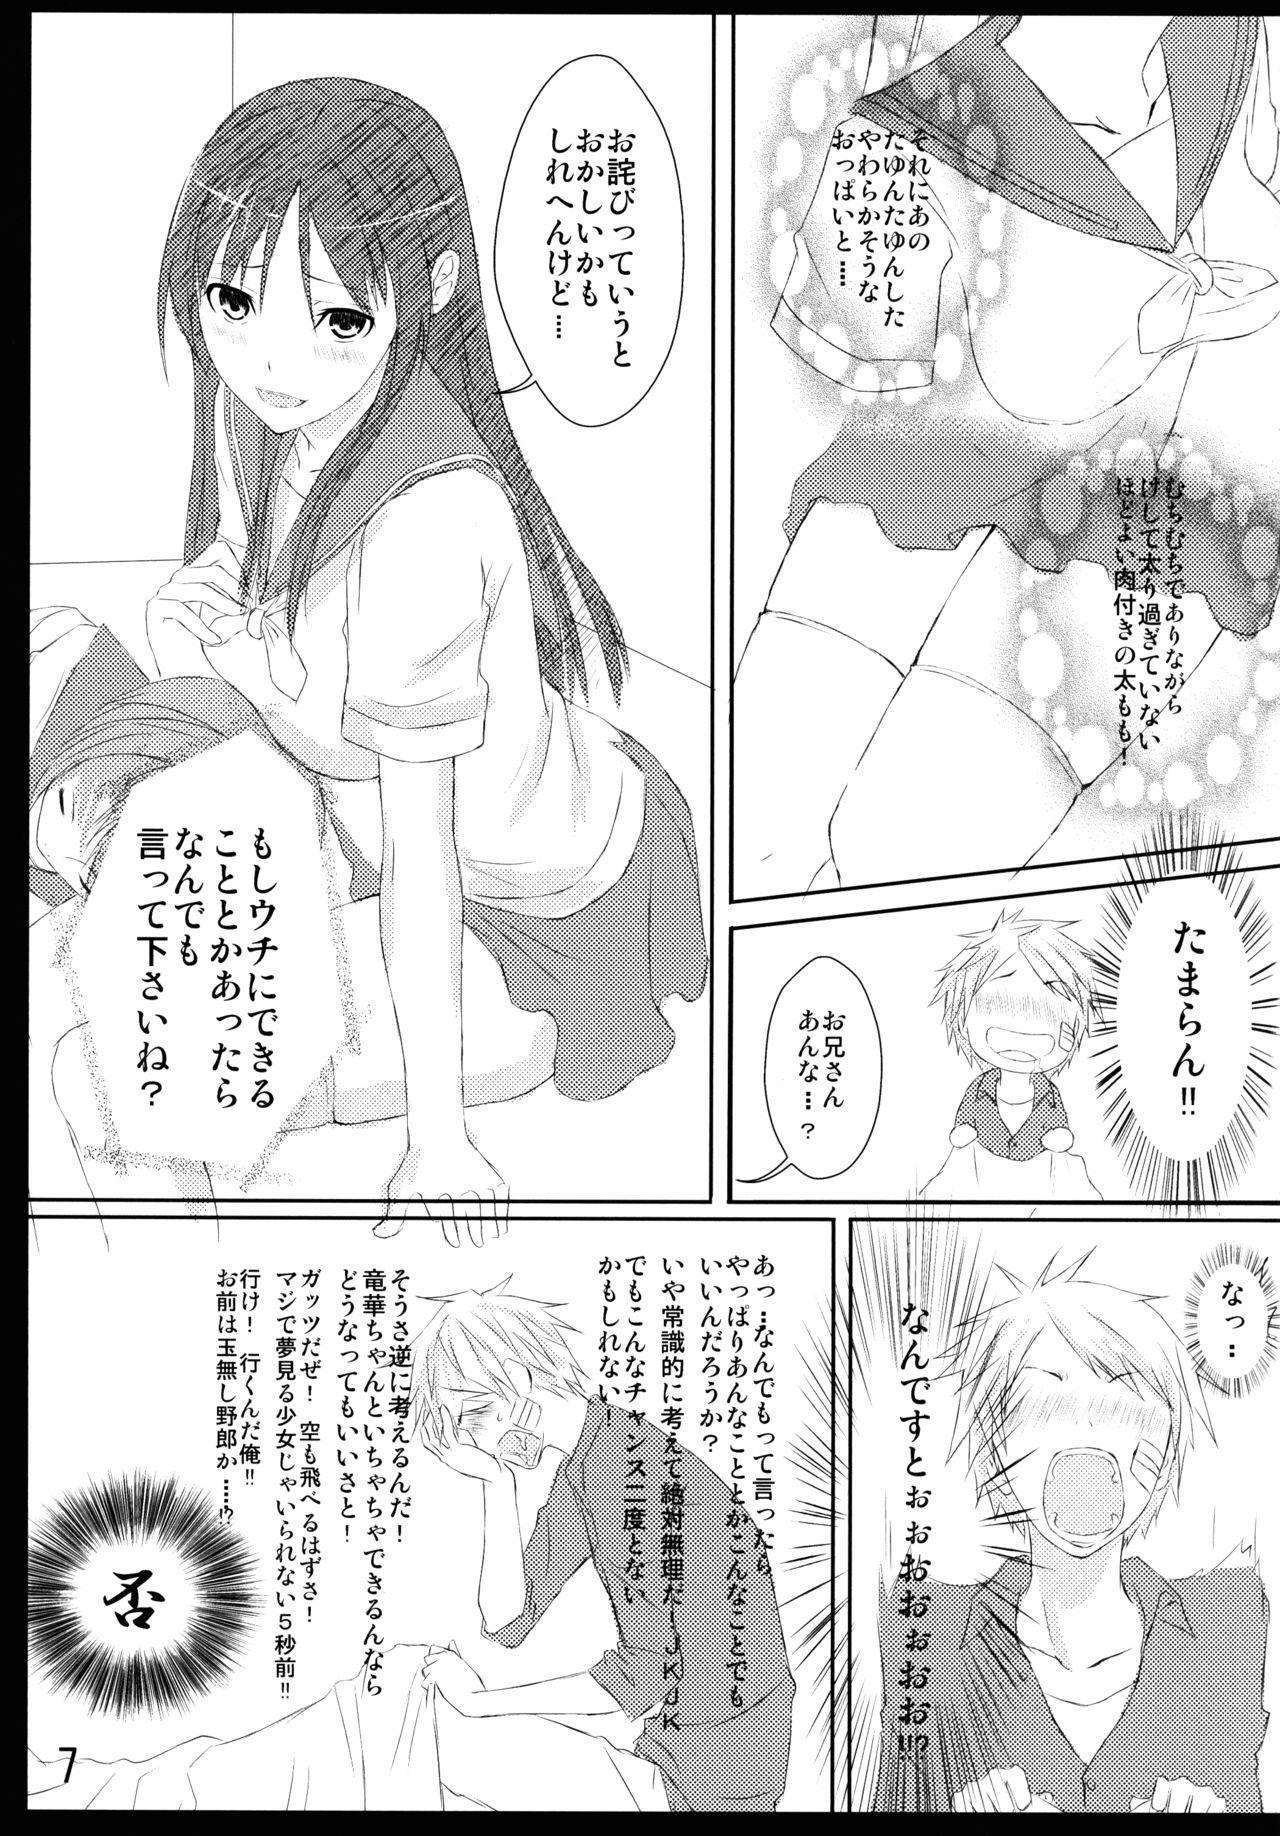 8teen Hizamakura wa Toki ni Kousokugu ni Narimasu!! - Saki Costume - Page 7